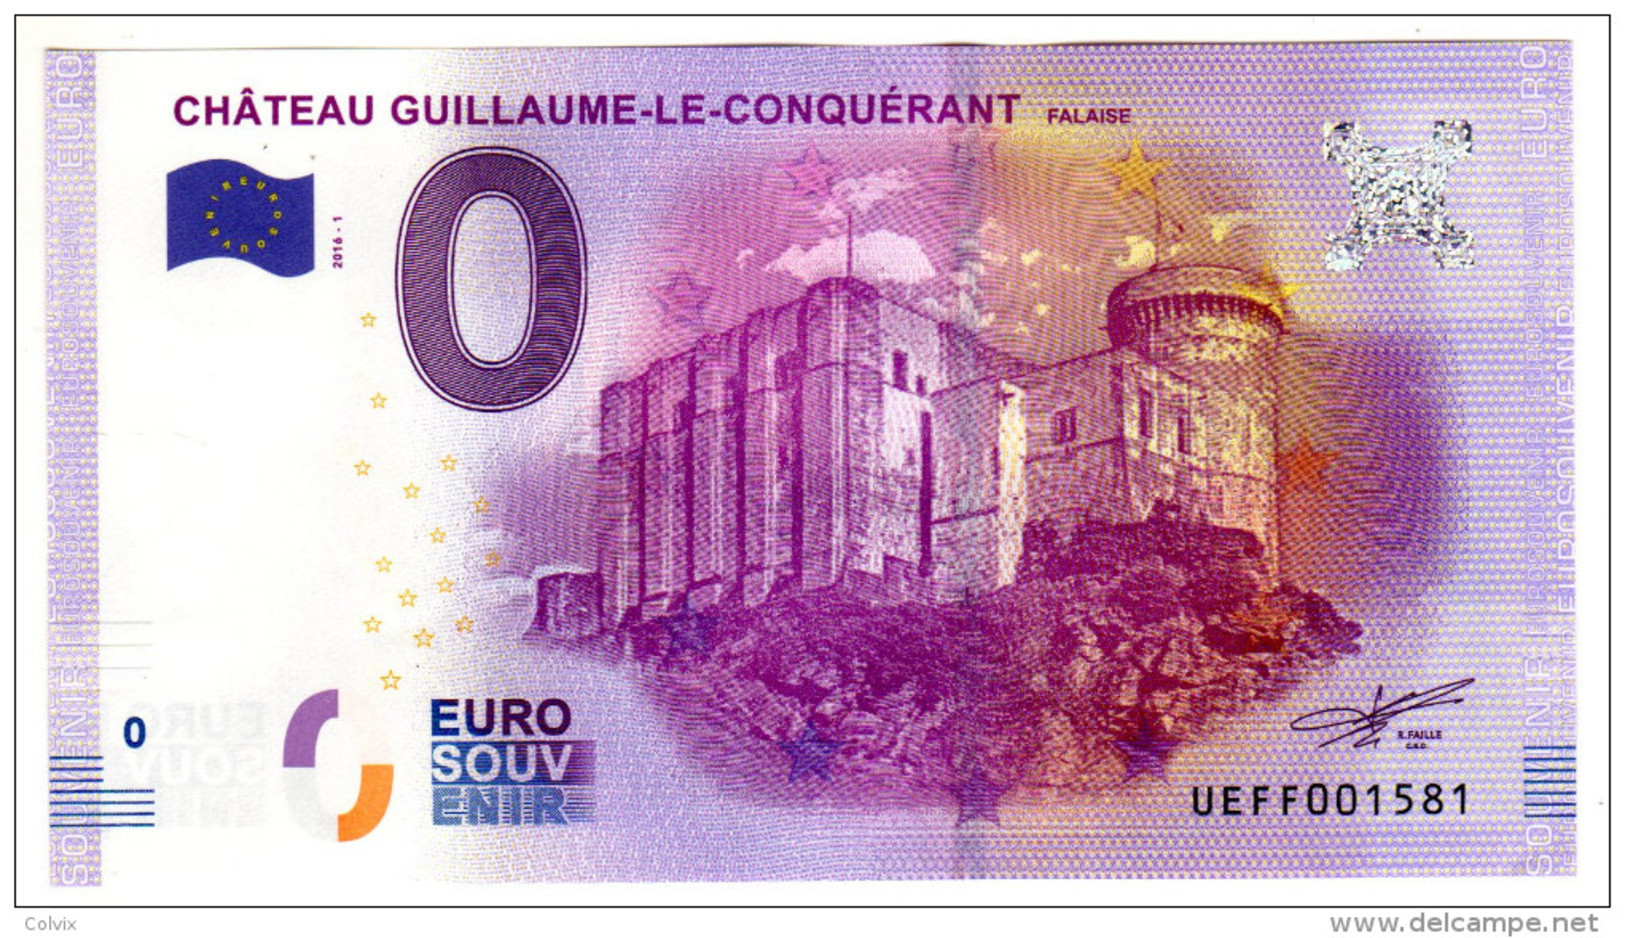 2016-1 BILLET TOURISTIQUE FRANCE 0 EURO SOUVENIR N°UEFF001580 CHATEAU GUILLAUME LE CONQUERANT - Essais Privés / Non-officiels